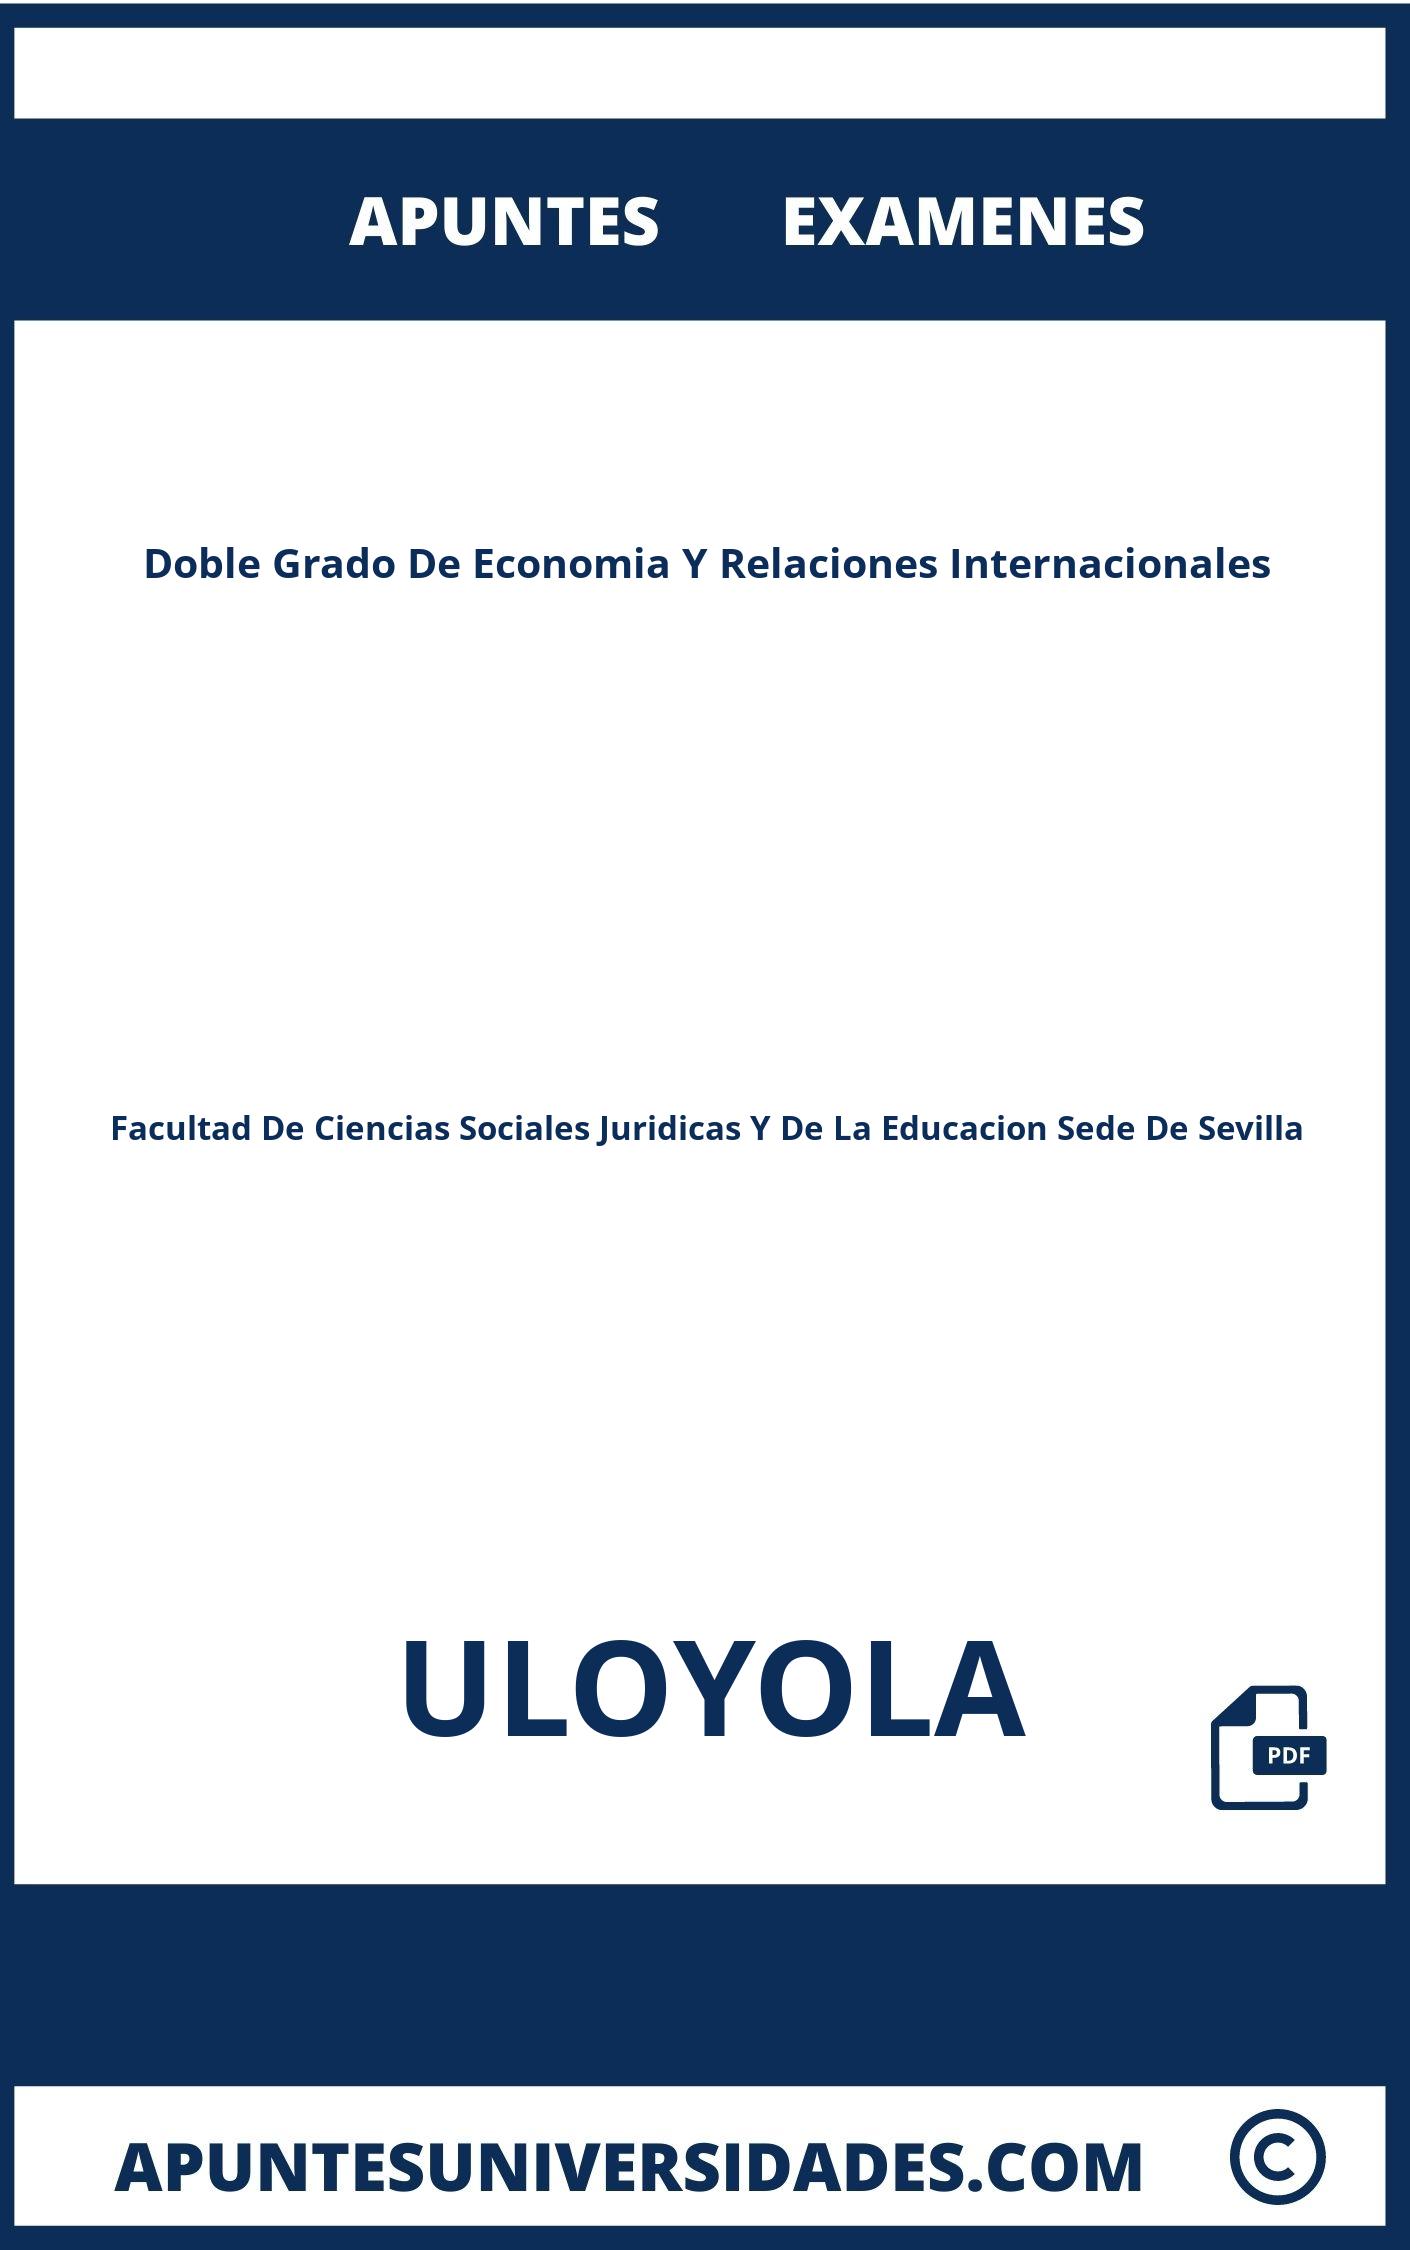 Examenes Apuntes Doble Grado De Economia Y Relaciones Internacionales ULOYOLA